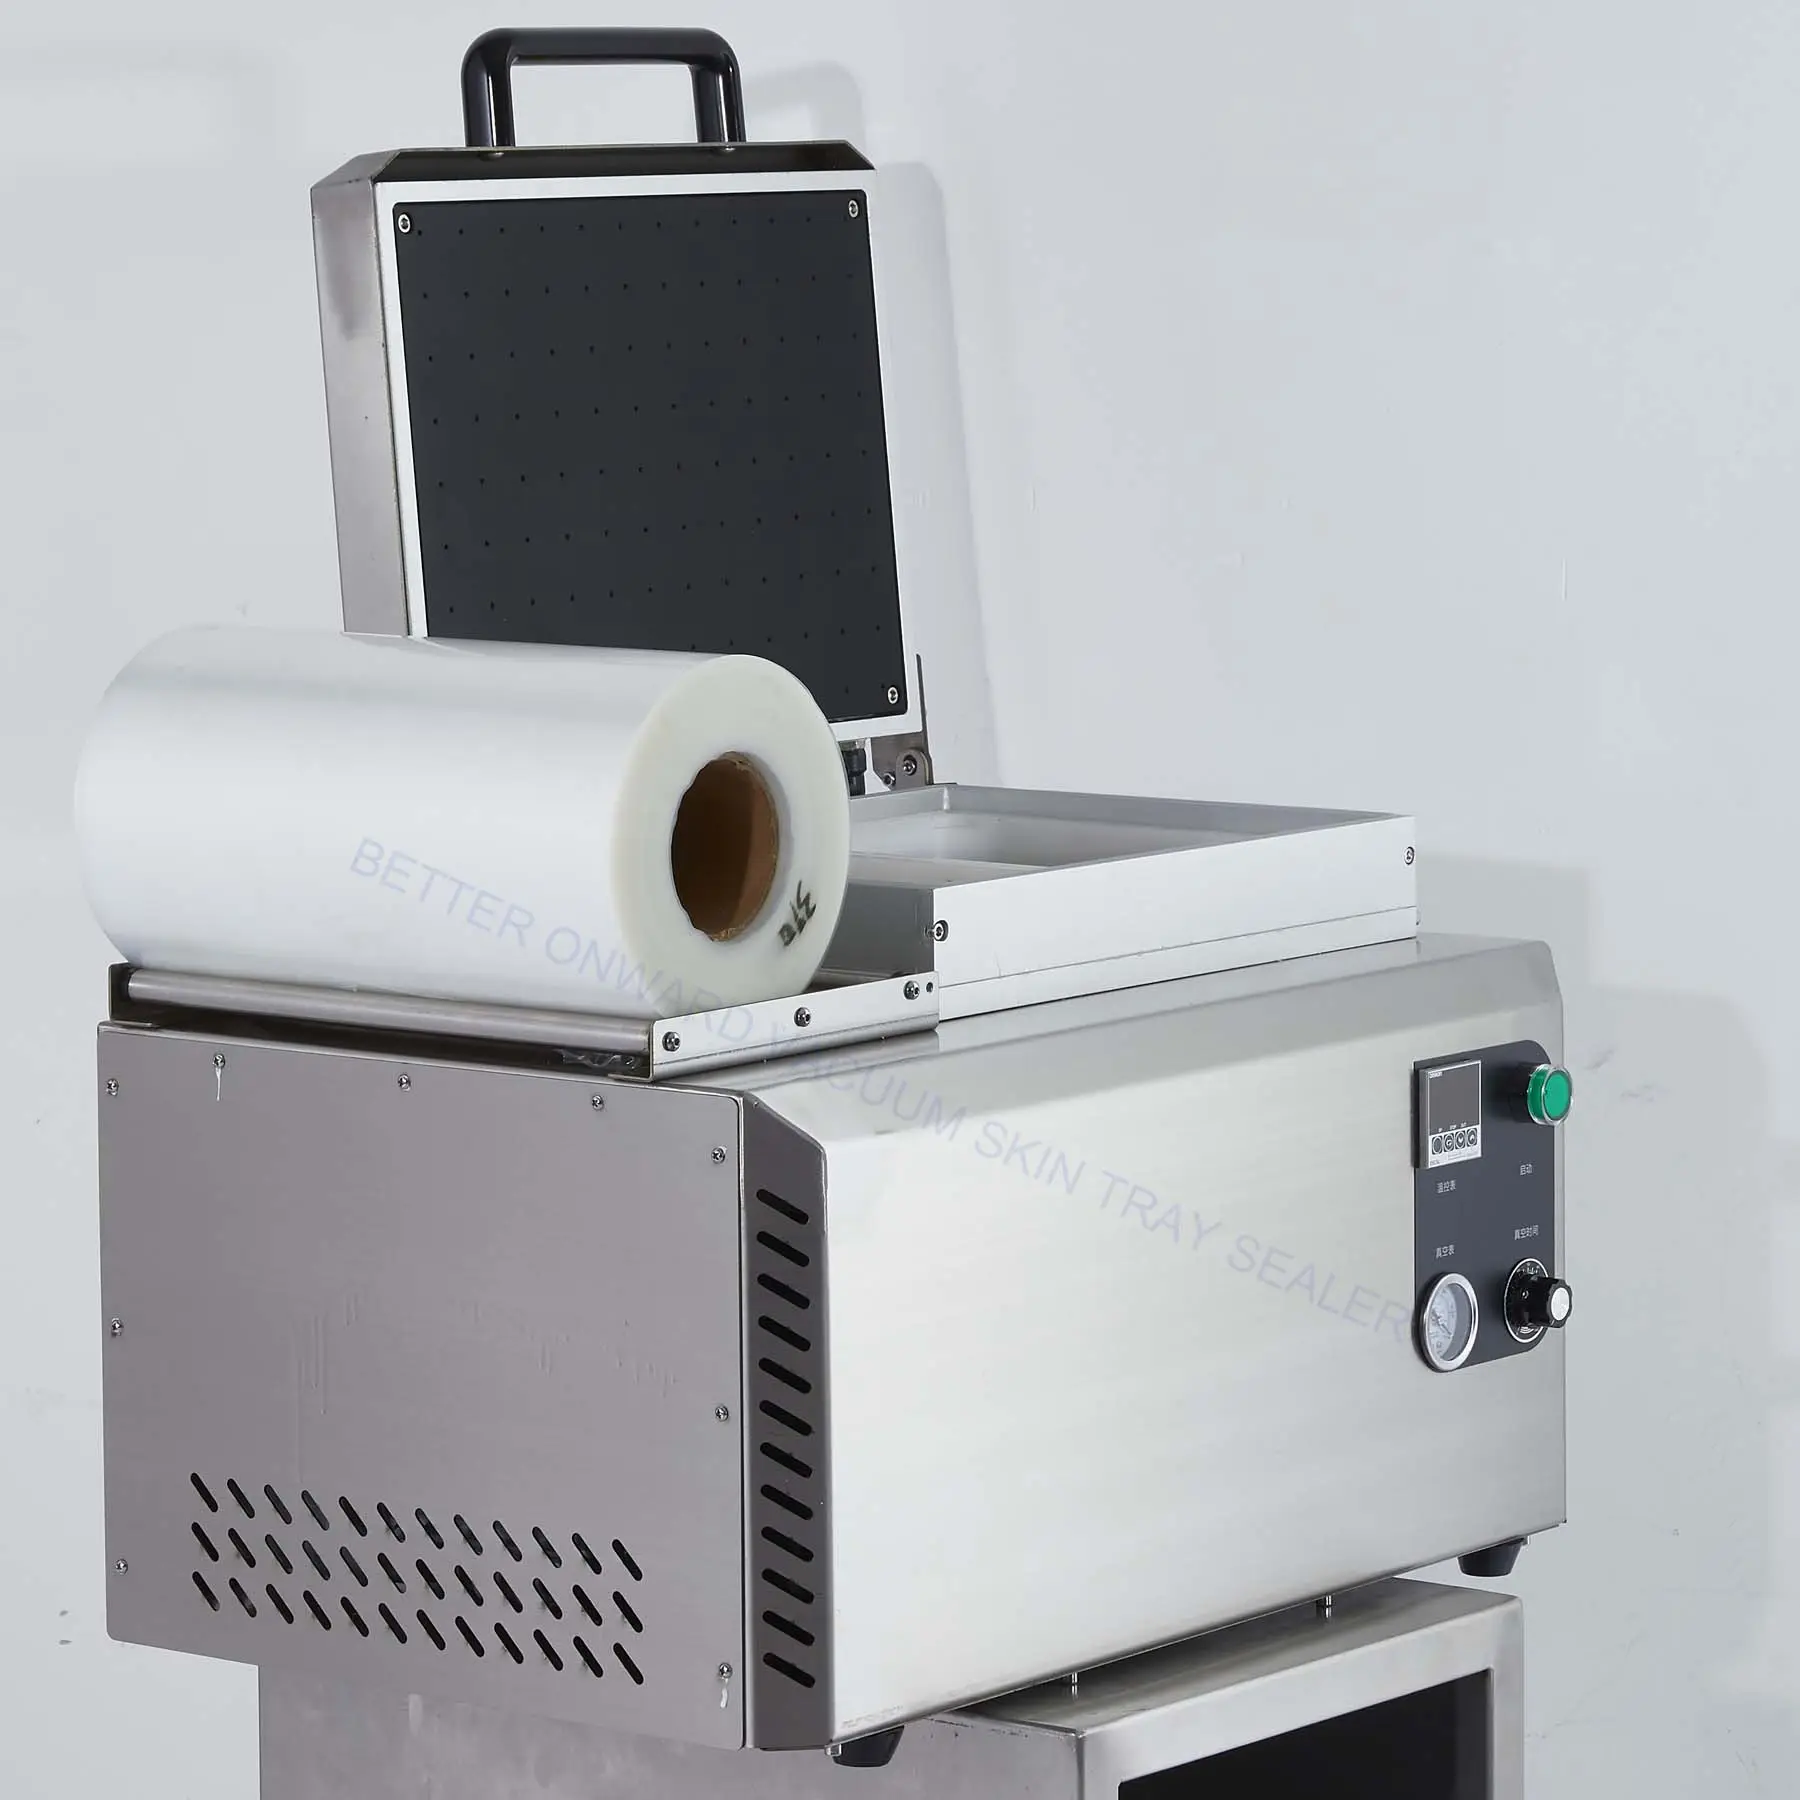 เครื่องซีลบรรจุภัณฑ์กระดาษแข็งสำหรับผิวสูญญากาศ DJT-250VS และอุปกรณ์เสริม